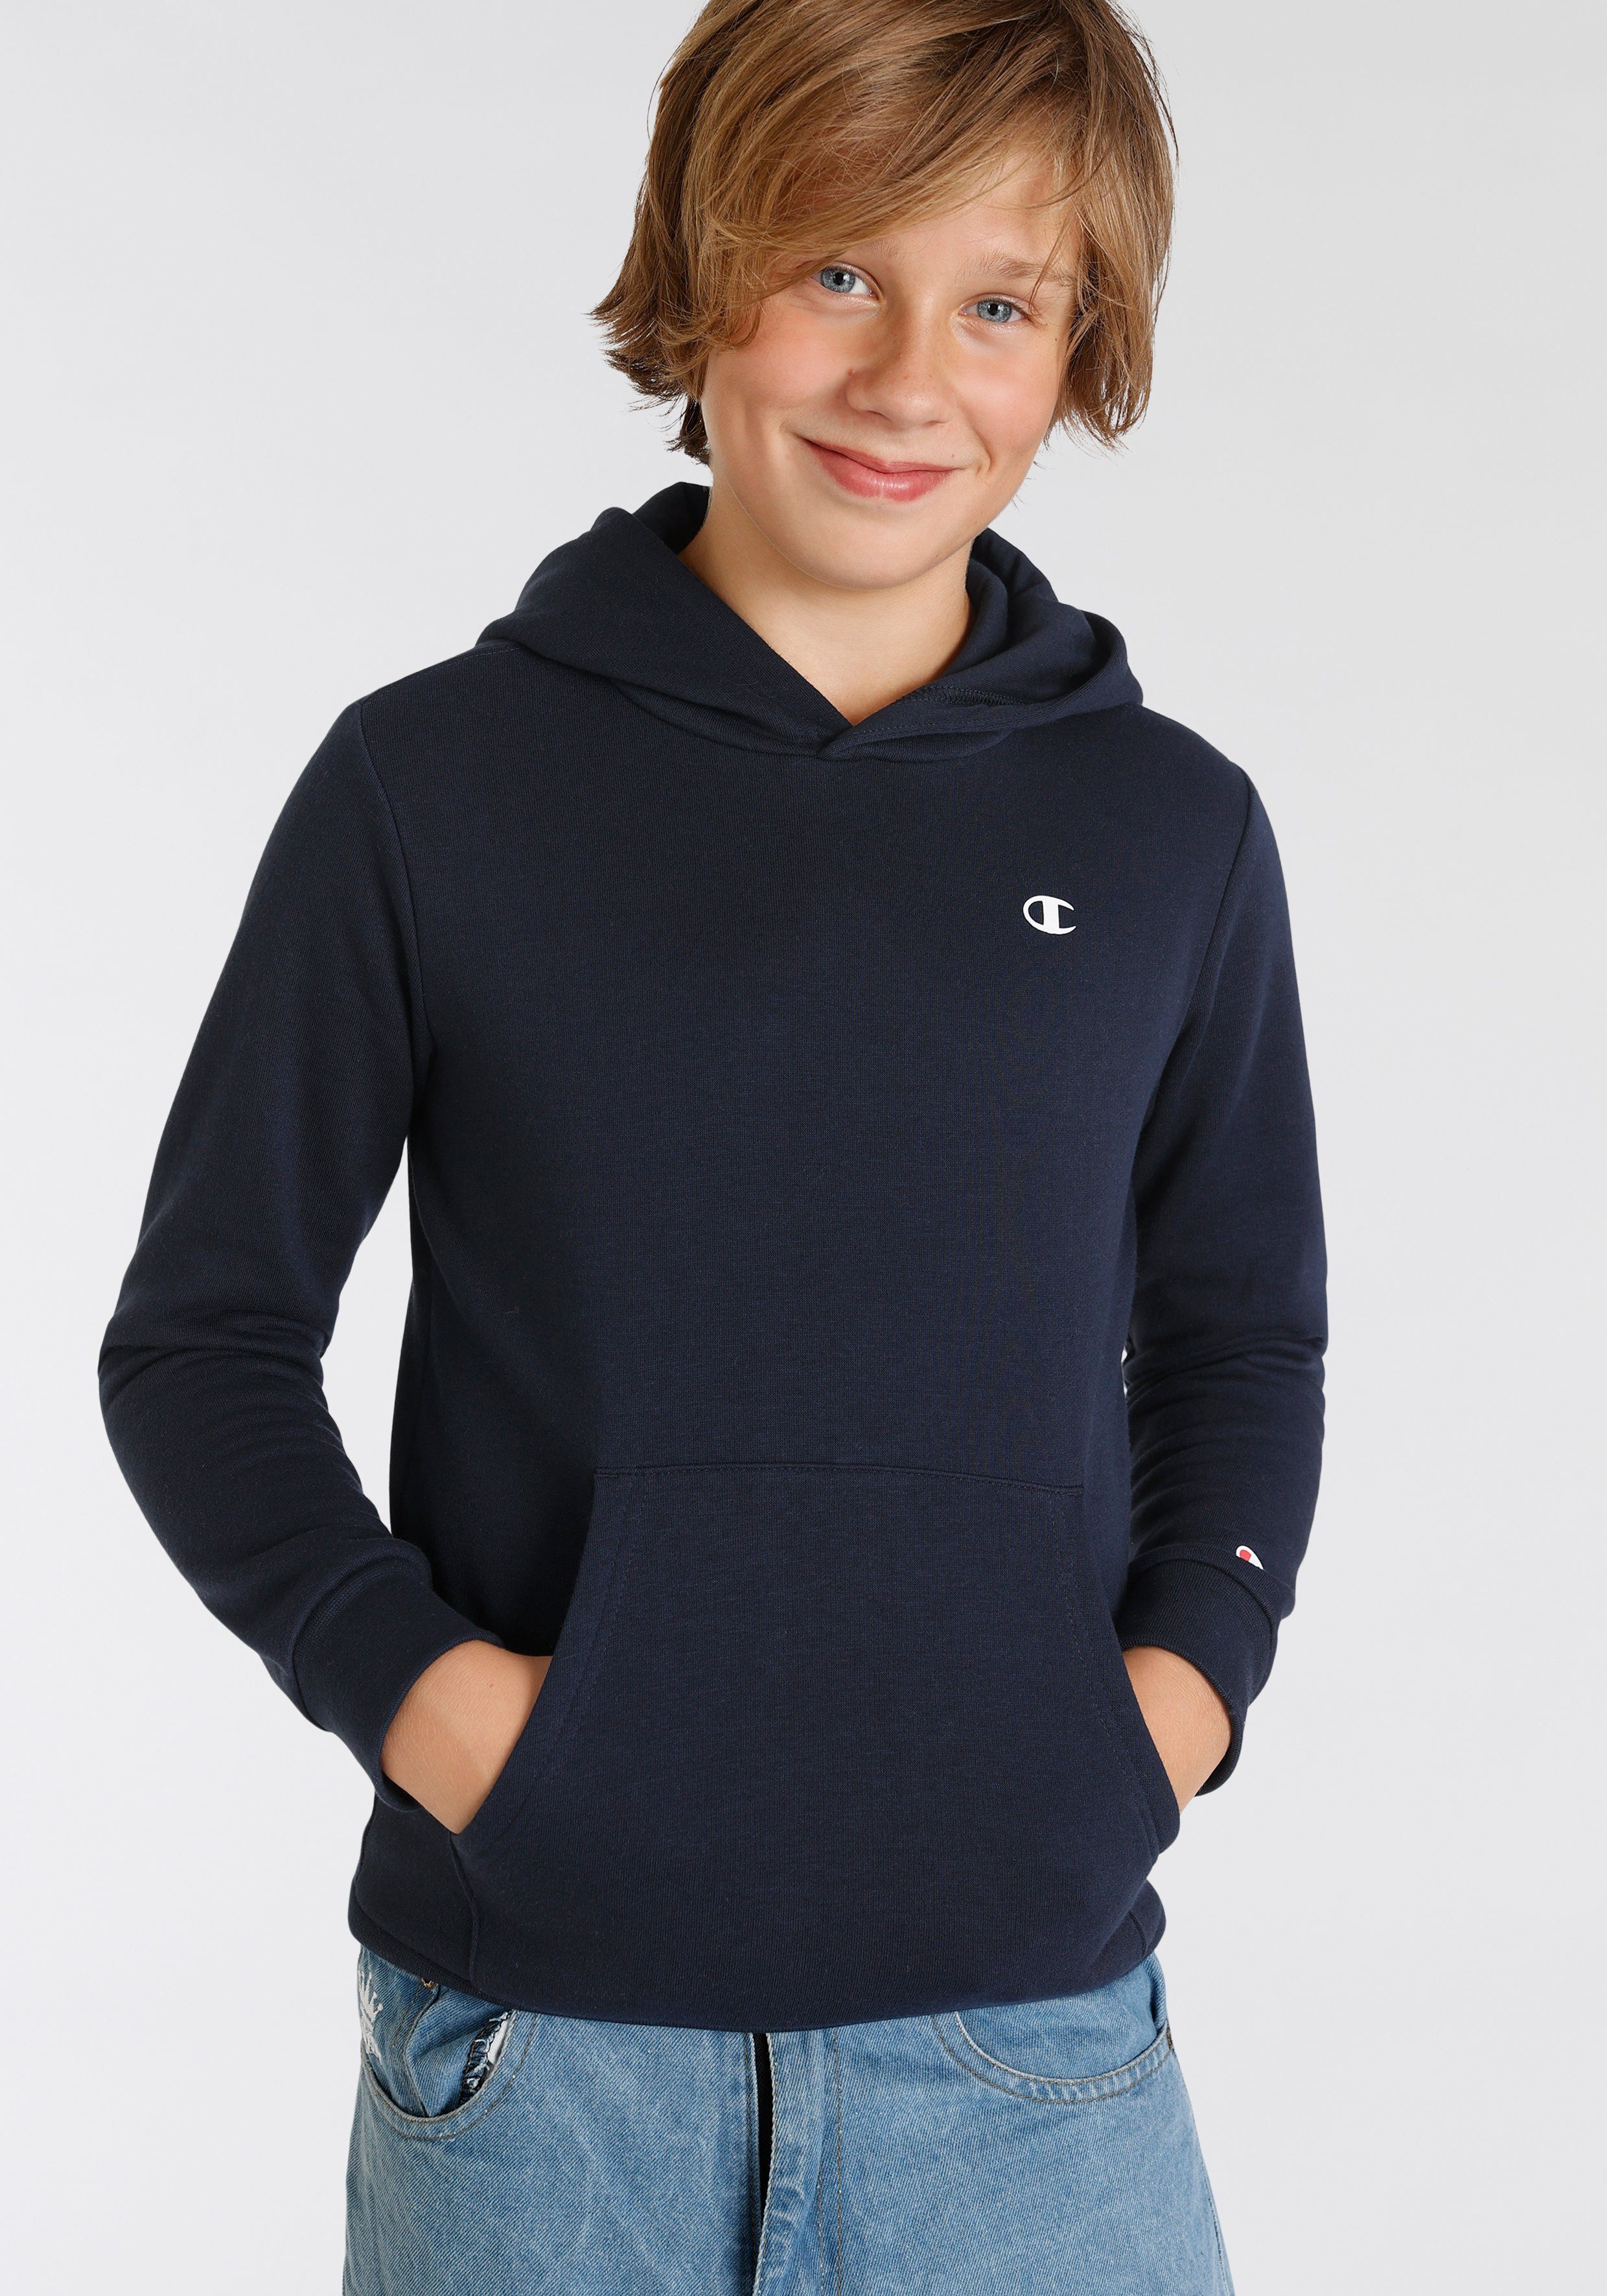 Kinder Basic Sweatshirt Champion Sweatshirt für Hooded -